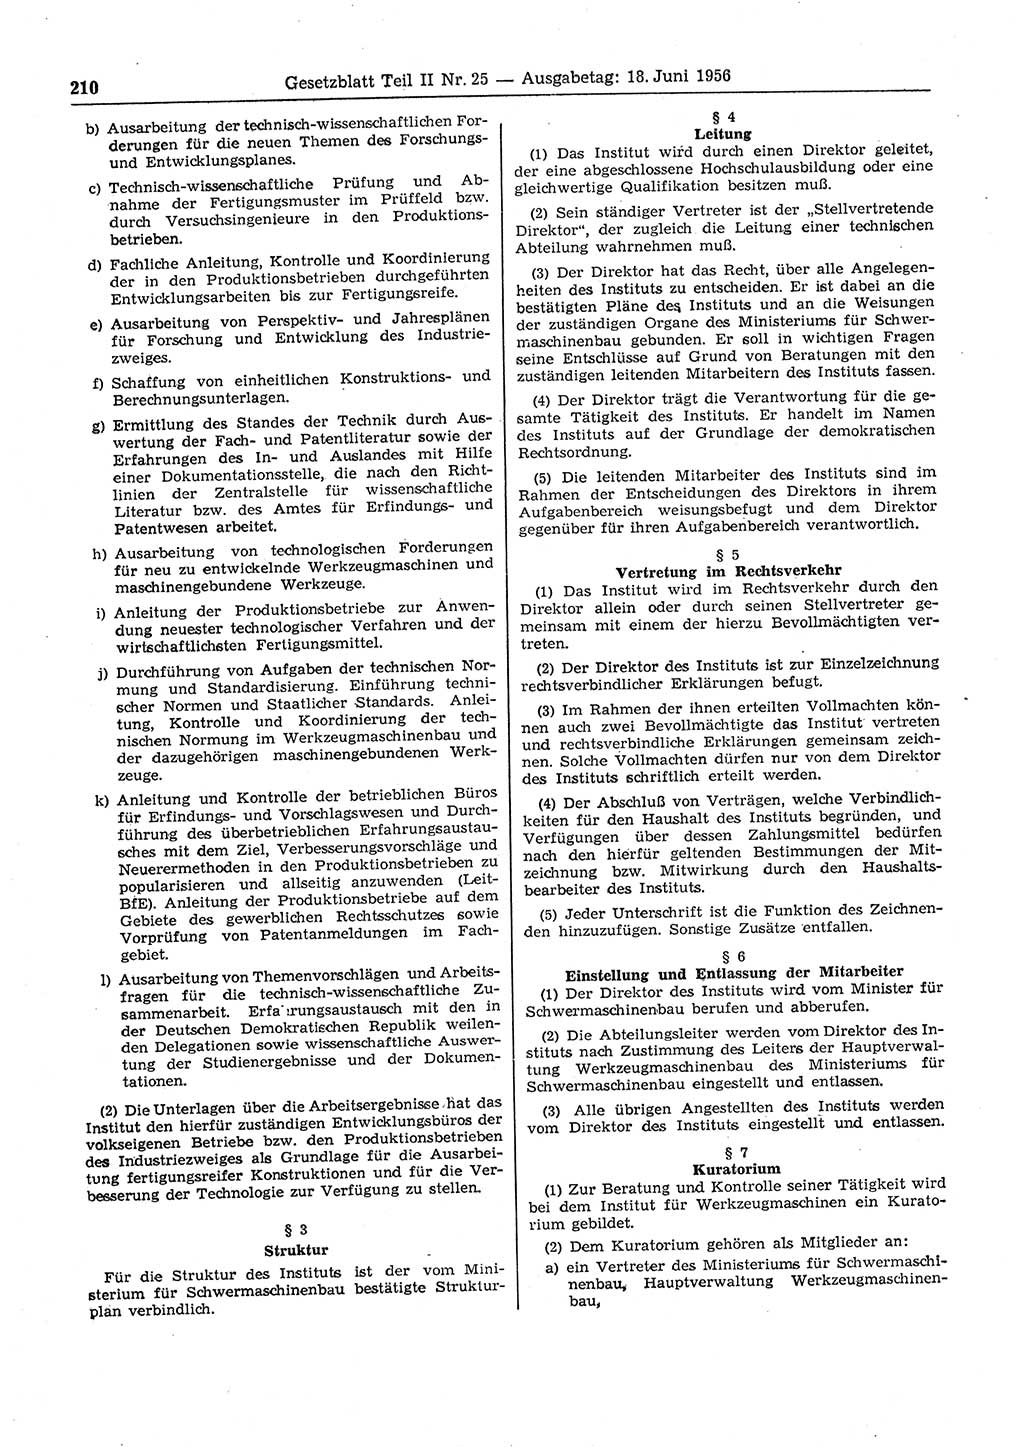 Gesetzblatt (GBl.) der Deutschen Demokratischen Republik (DDR) Teil ⅠⅠ 1956, Seite 210 (GBl. DDR ⅠⅠ 1956, S. 210)